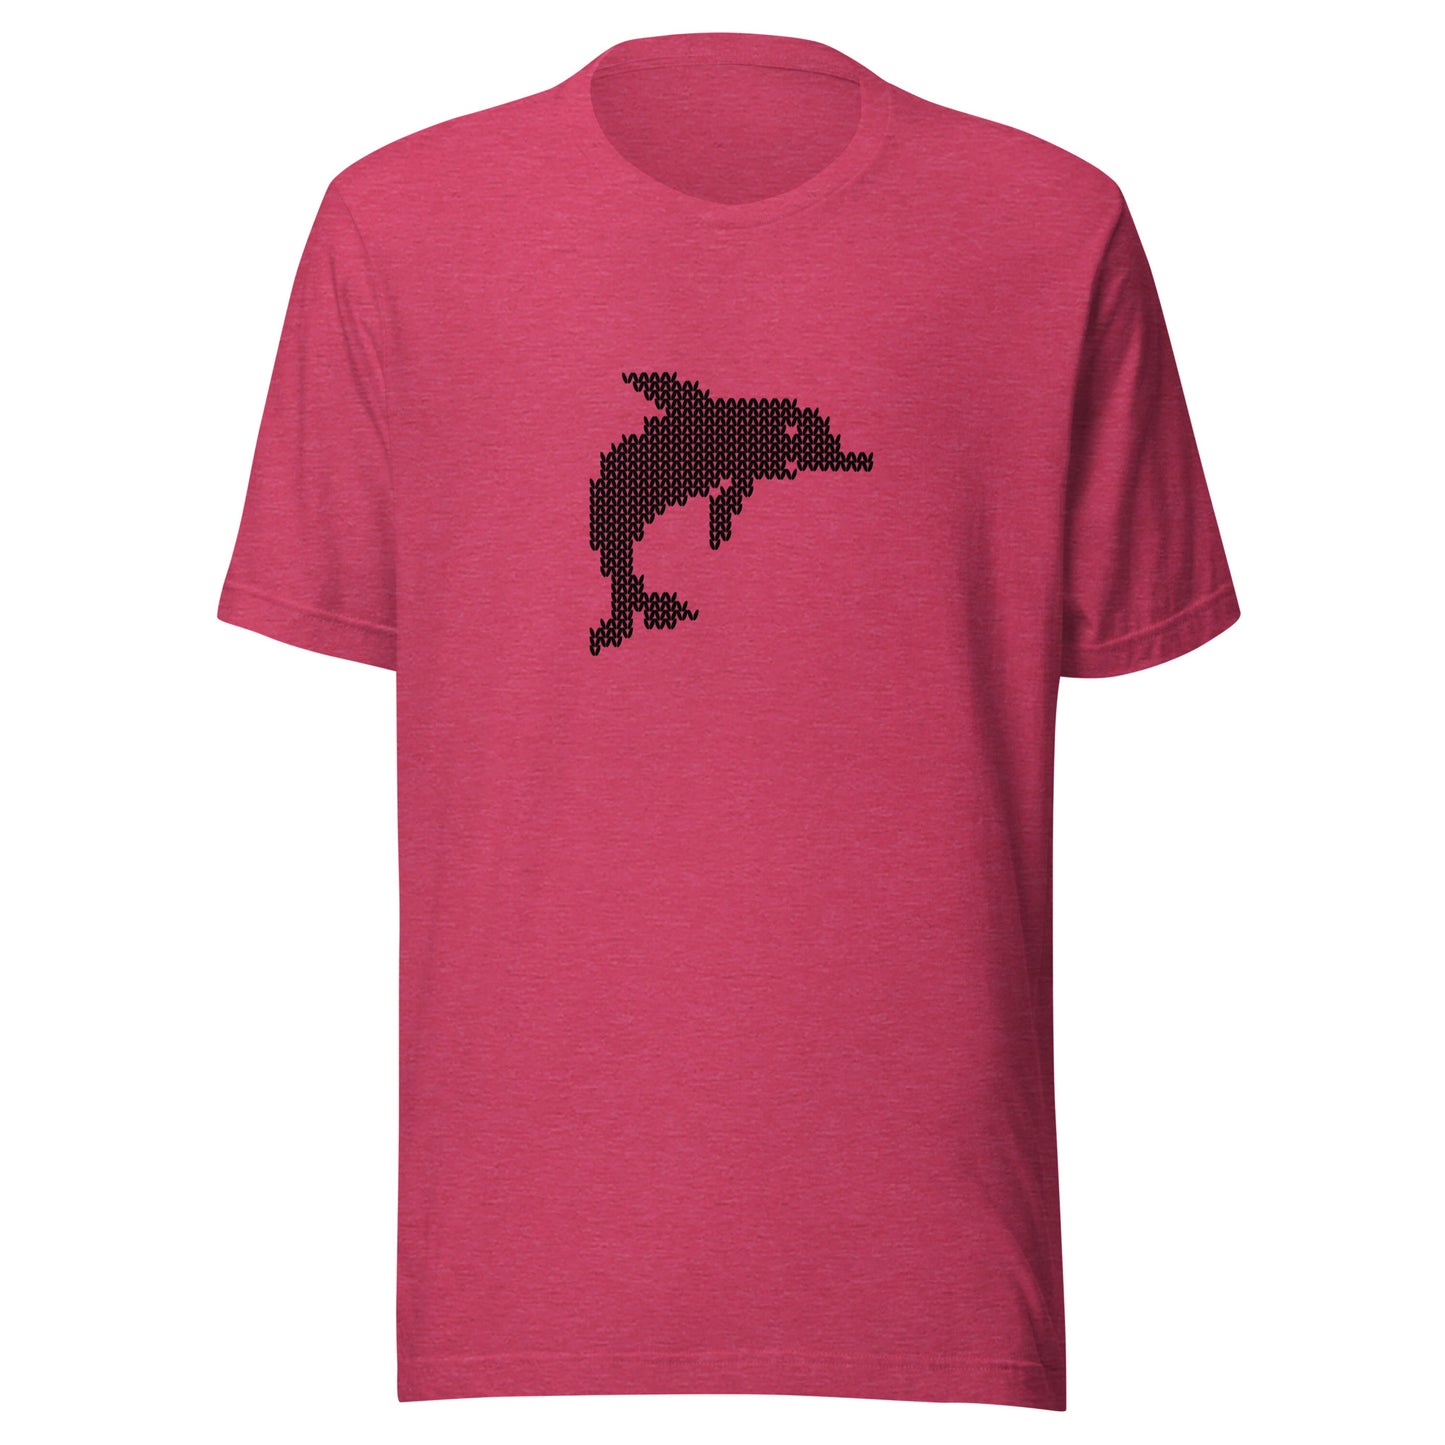 Sommer T-Shirt mit Delfin